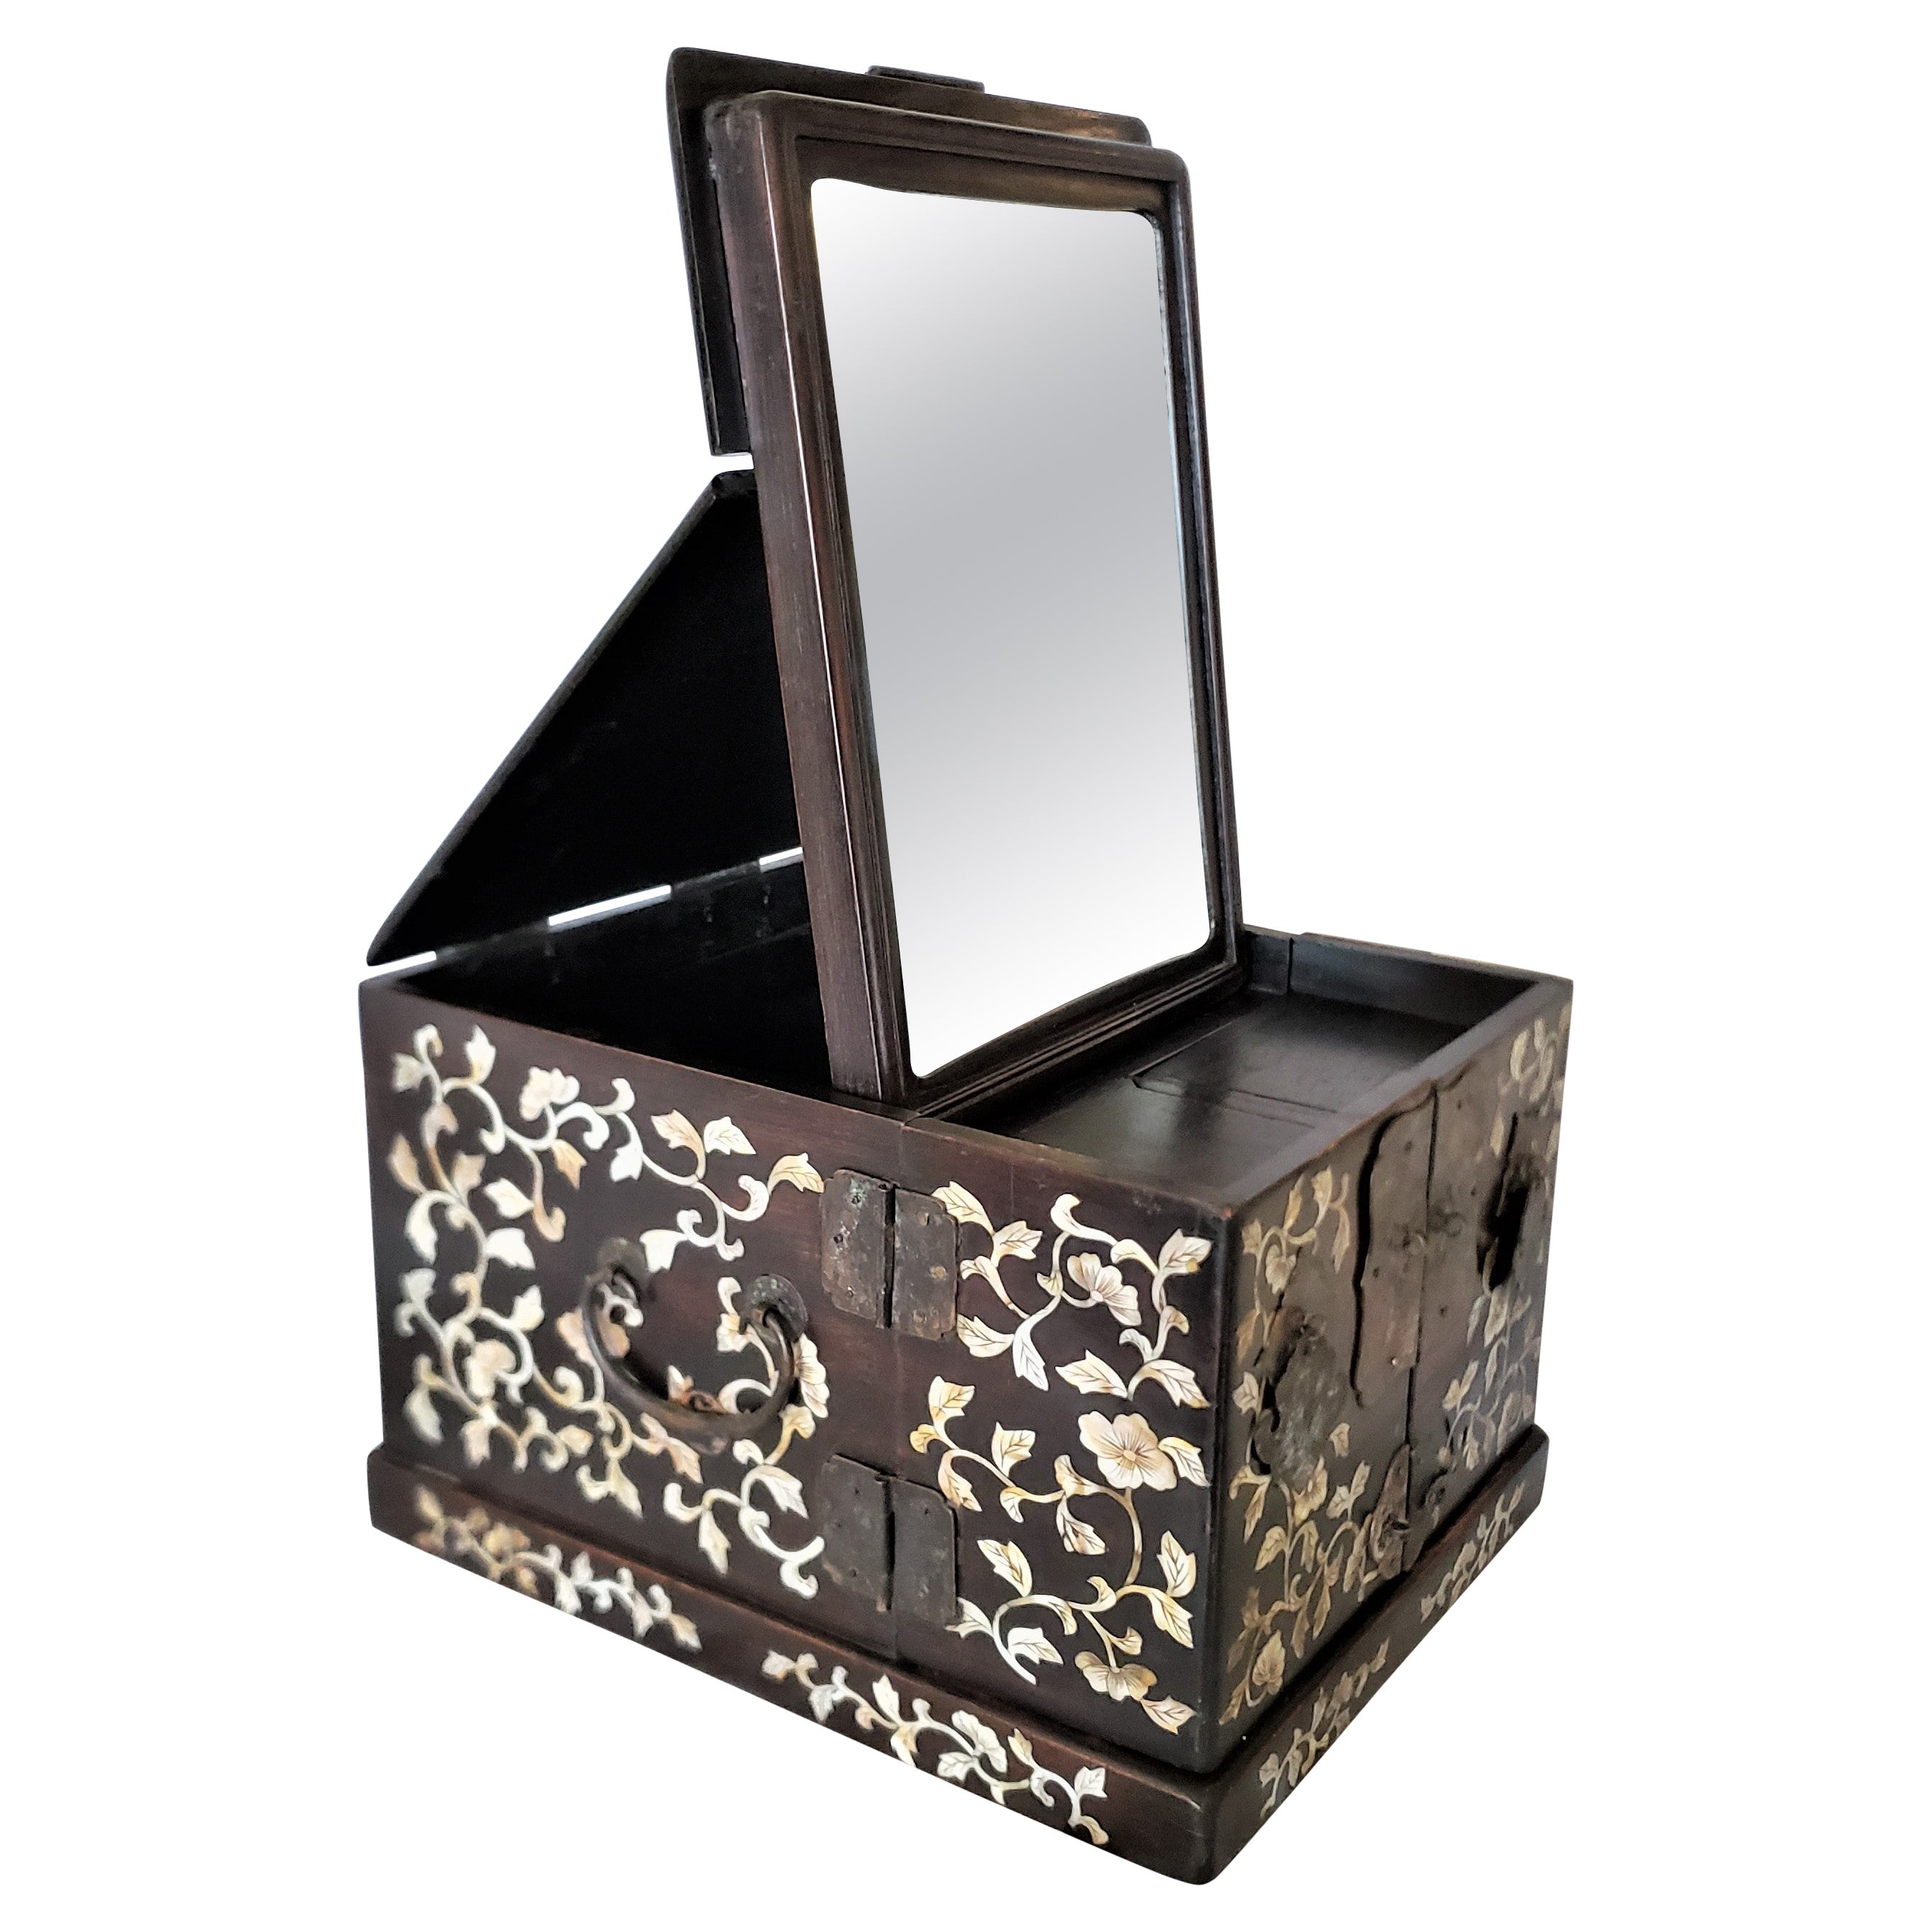 Ancienne boîte à bijoux ou commode de coiffeuse chinoise en bois avec incrustation complexe